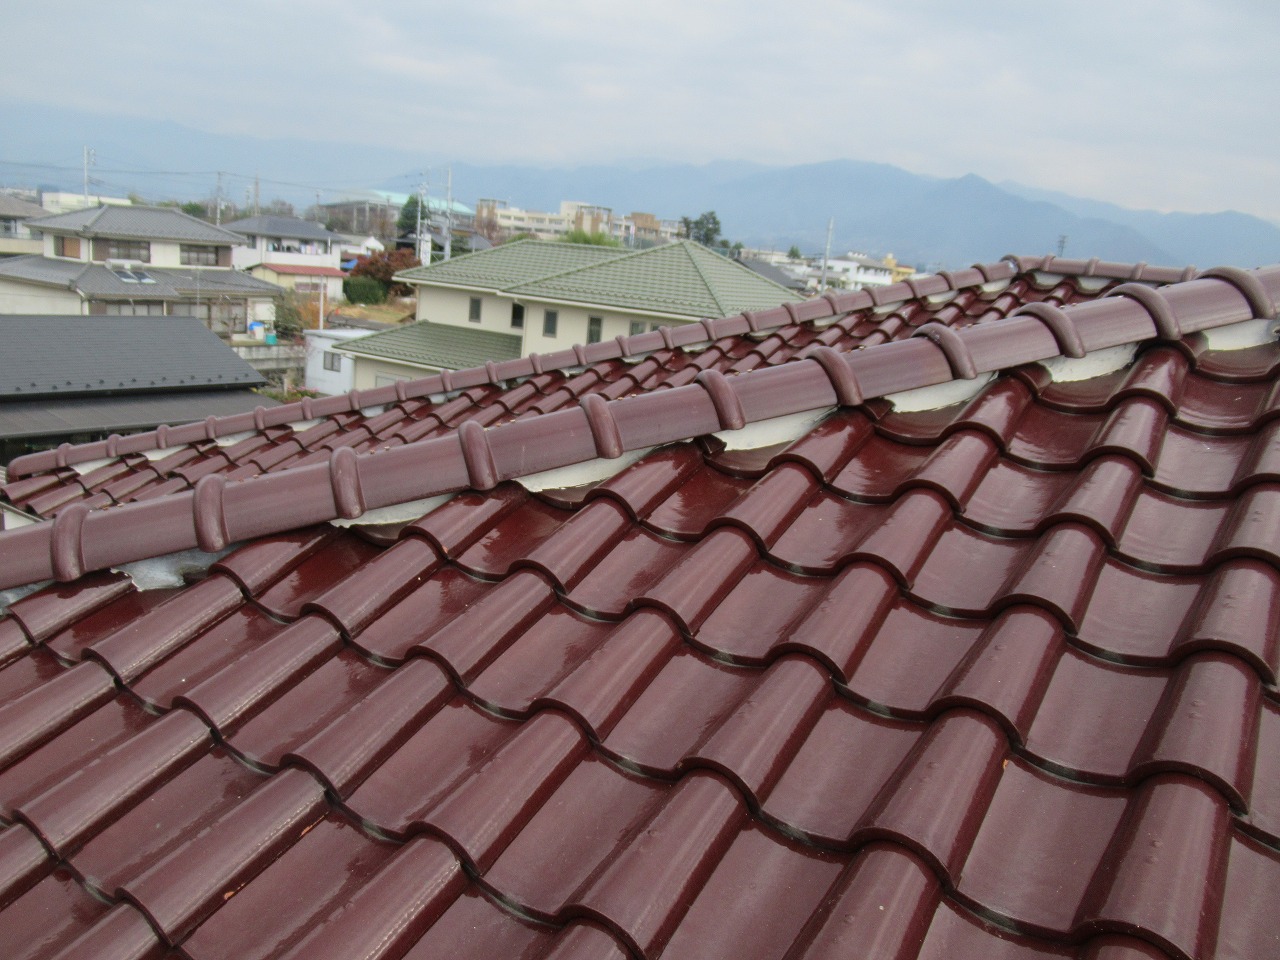 韮崎市で赤い瓦屋根の住宅の調査を行い、軽微な被害を発見しました